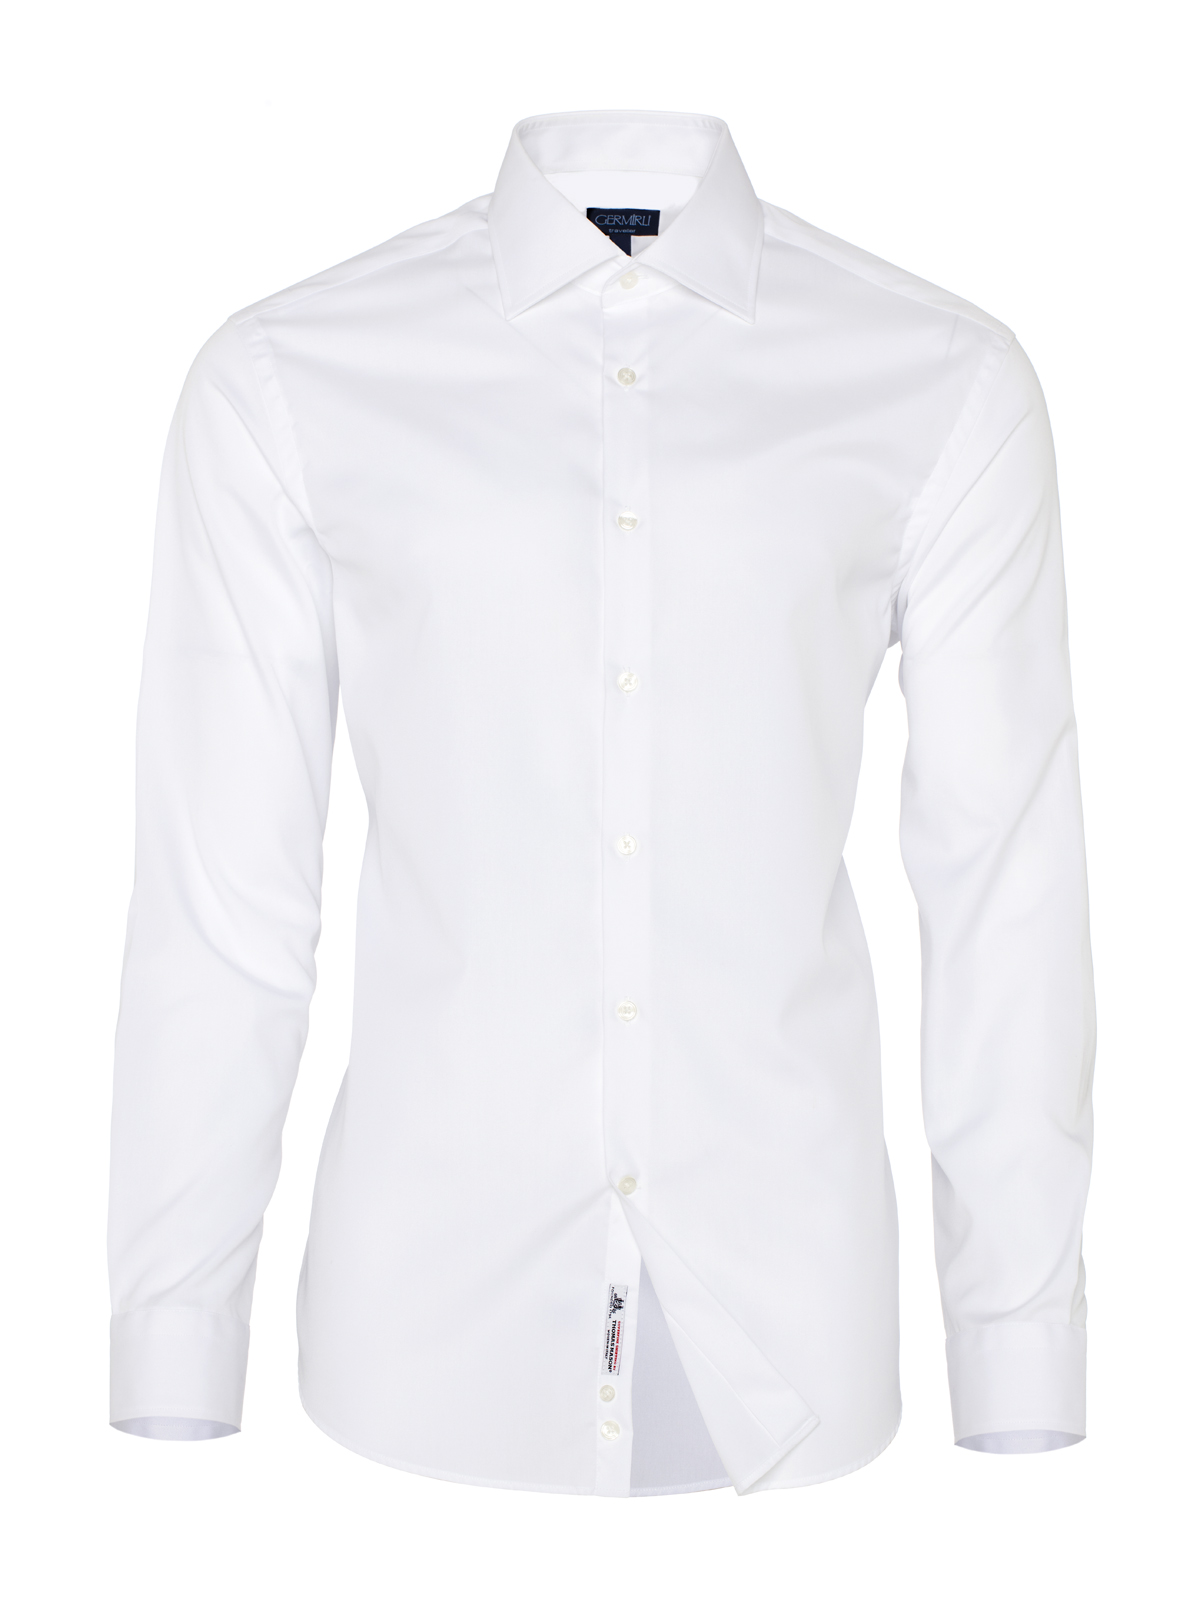 Germirli - Germirli Non Iron Beyaz Oxford Klasik Yaka Tailor Fit Journey Gömlek